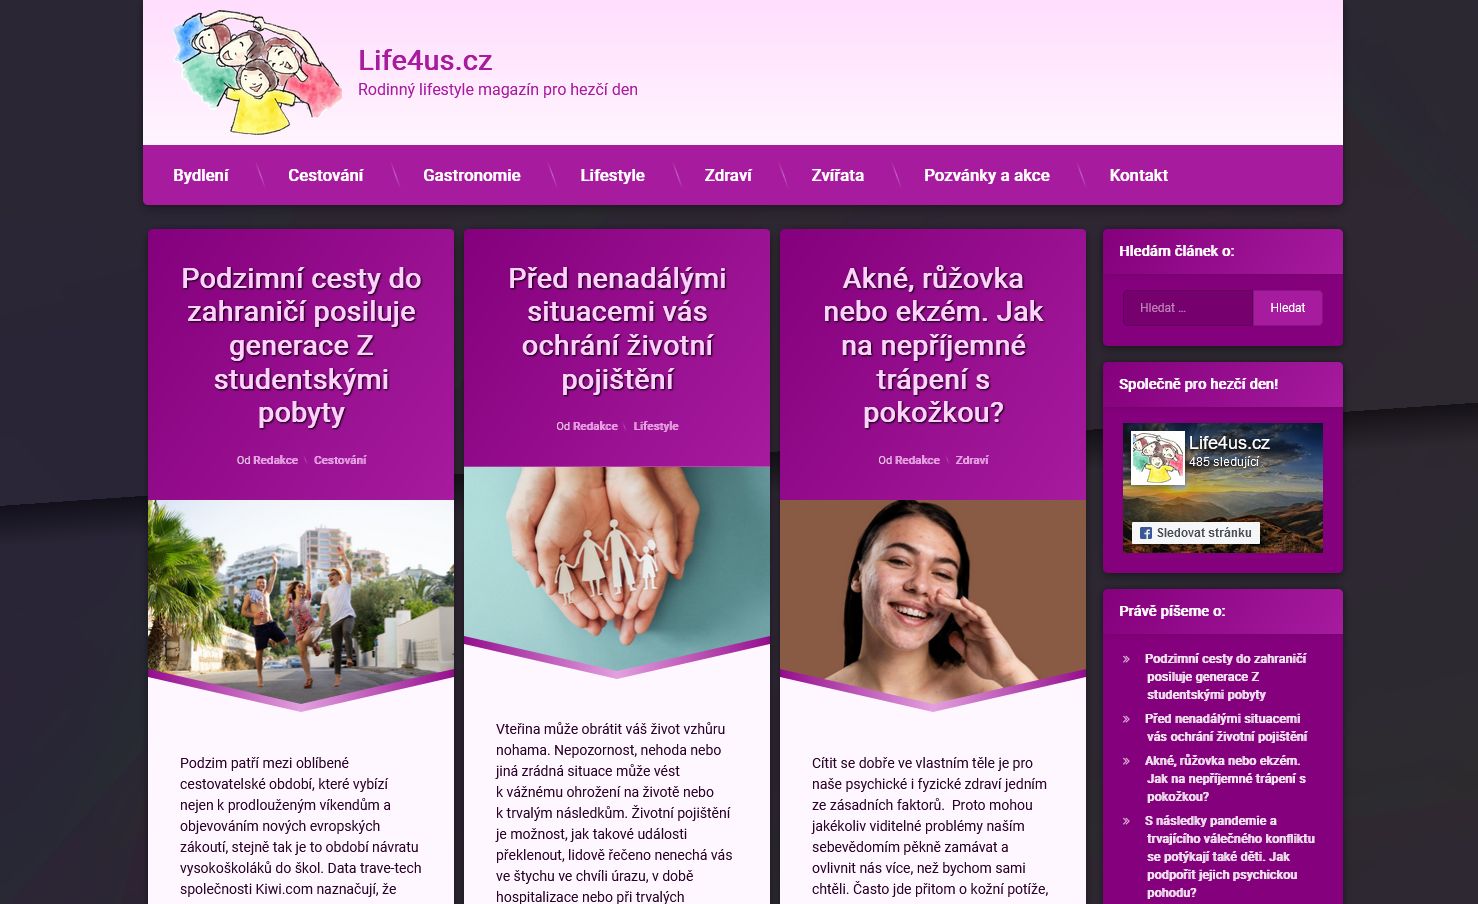 20251Publikace článku na lifestyle magazínu fittyn.cz